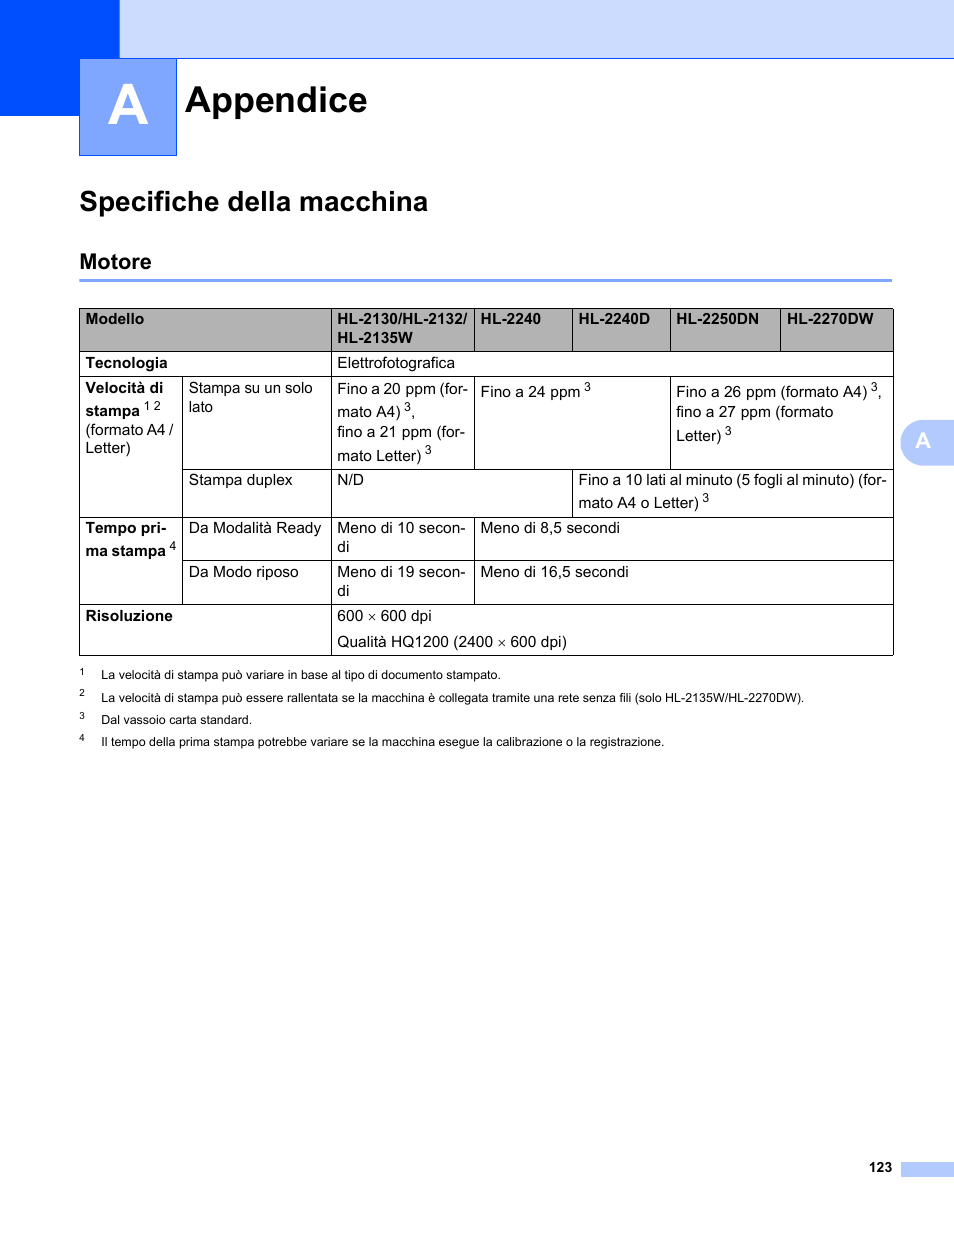 A appendice, Specifiche della macchina, Motore | Appendice | Brother HL 2270DW Manuale d'uso | Pagina 127 / 151